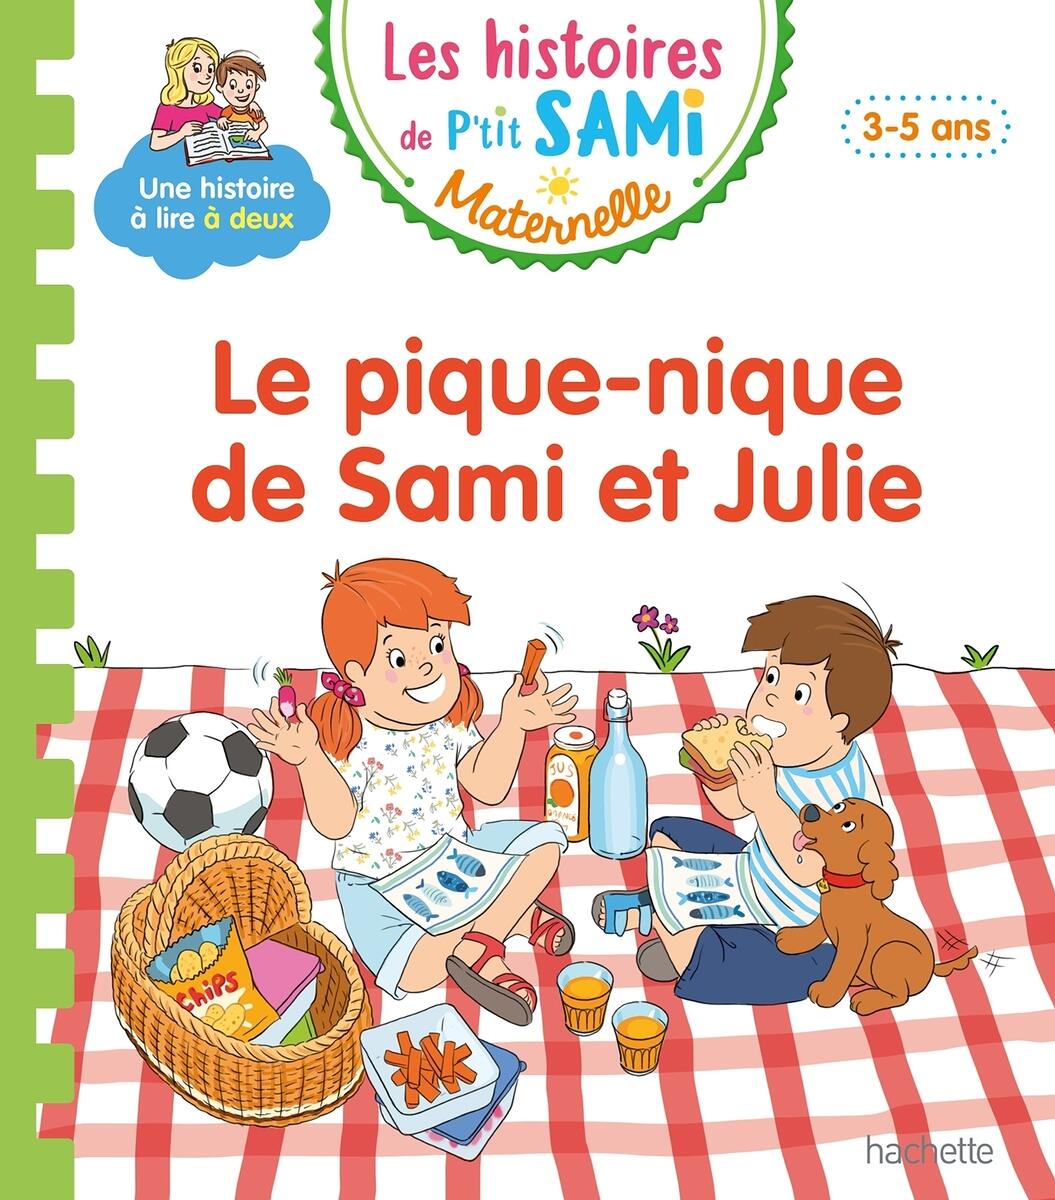 Les histoires de P'tit Sami Maternelle (3-5 ans): Julie a la